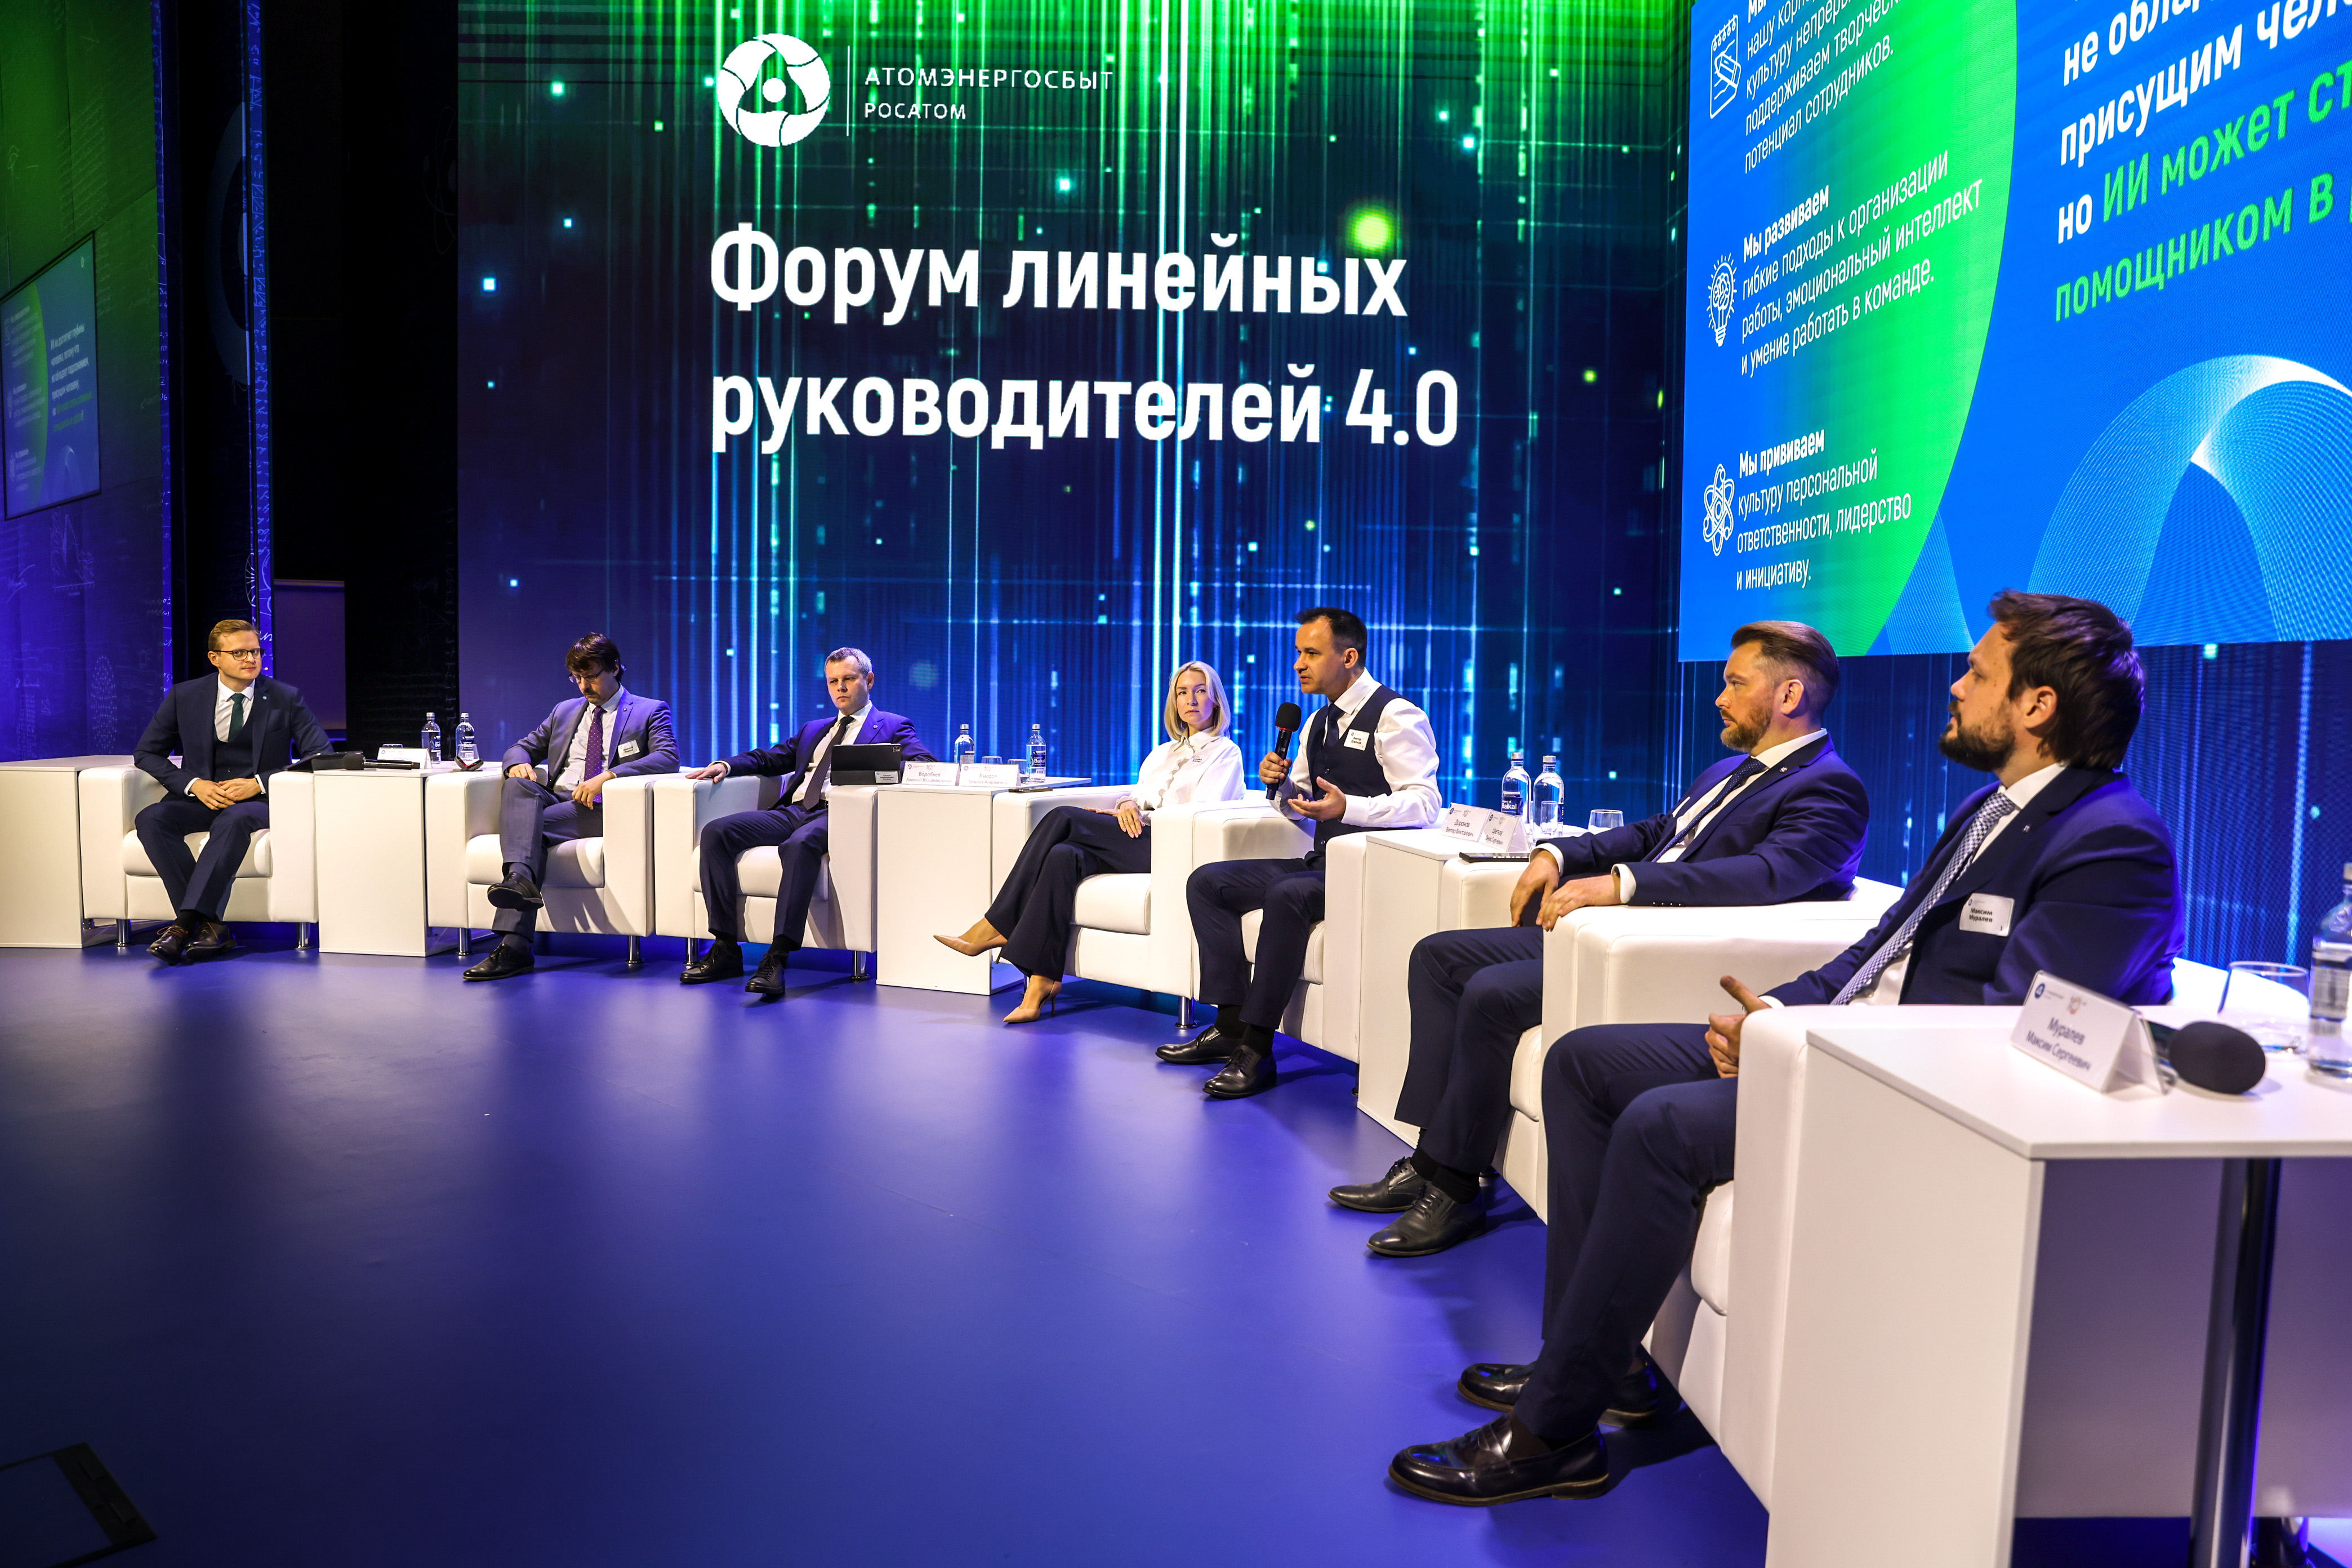 АтомЭнергоСбыт провёл Форум линейных руководителей в павильоне Атом на ВДНХ